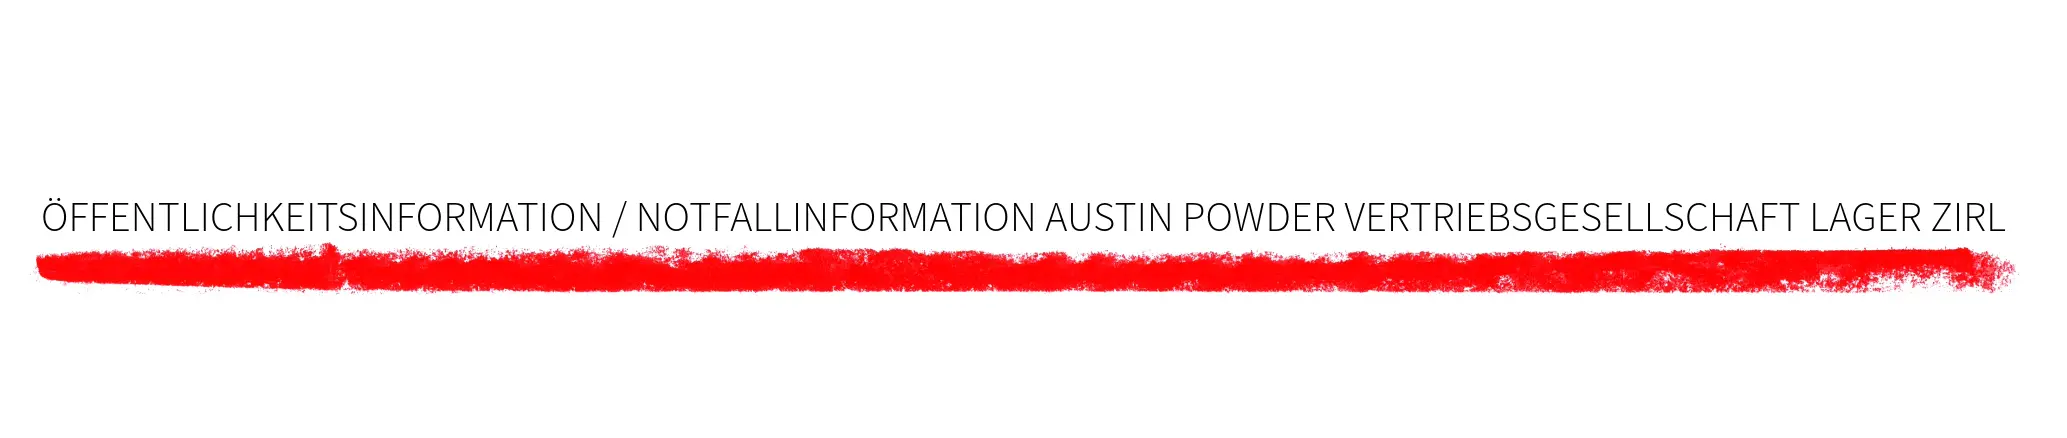 Offentlichkeitsinformation / Notfallinformation Austin Powder Vertriebsgesellschaft Lager ZIRL